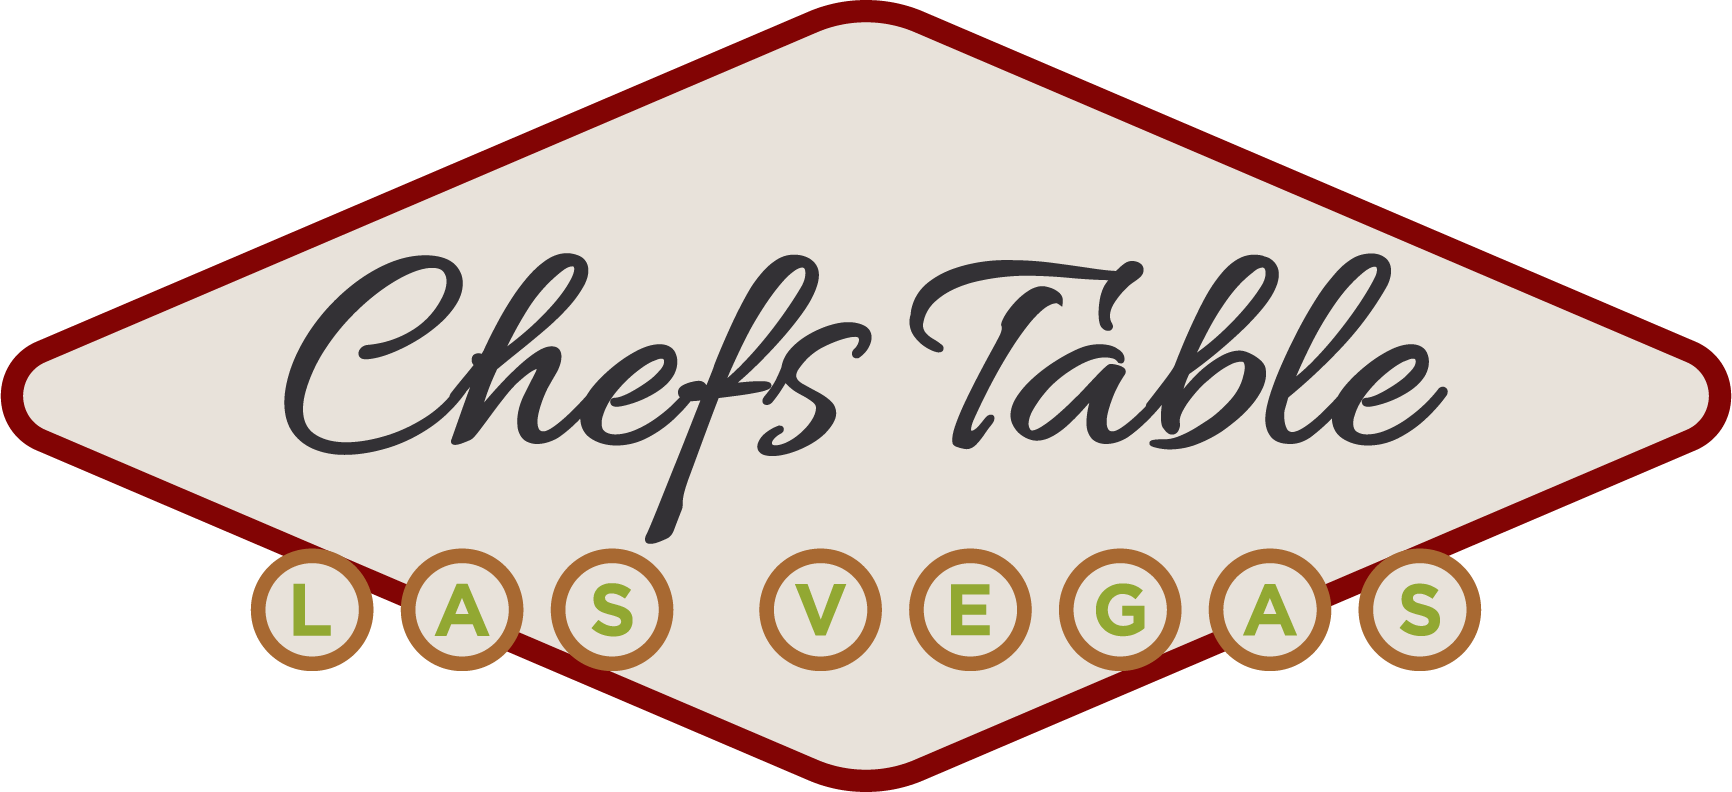 CX-64334_Chefs Table Las Vegas_Final